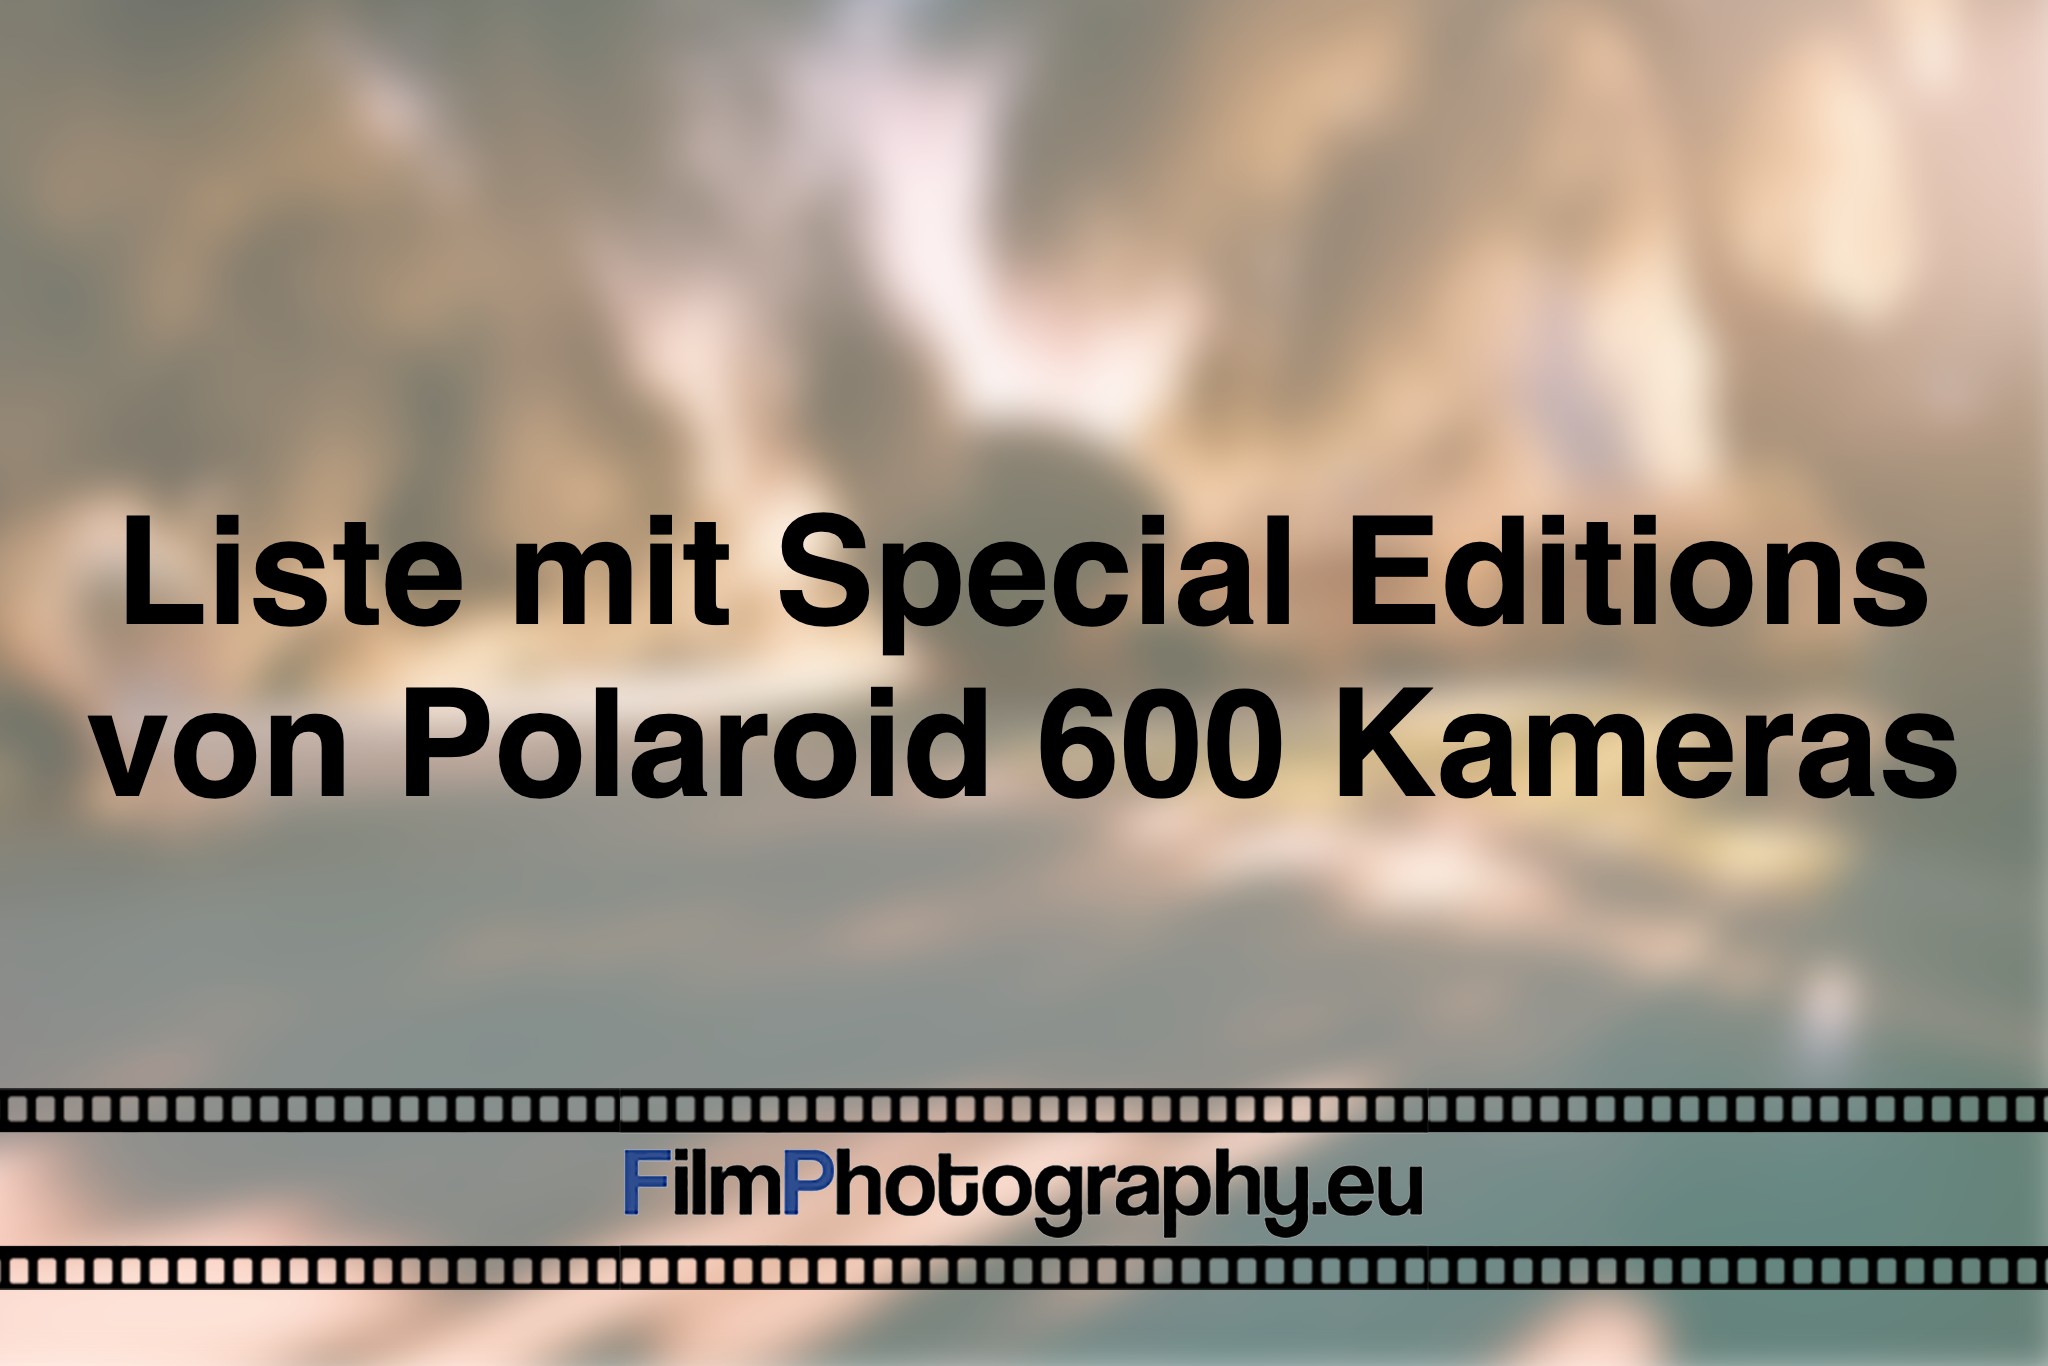 liste-mit-special-editions-von-polaroid-600-kameras-photo-bnv